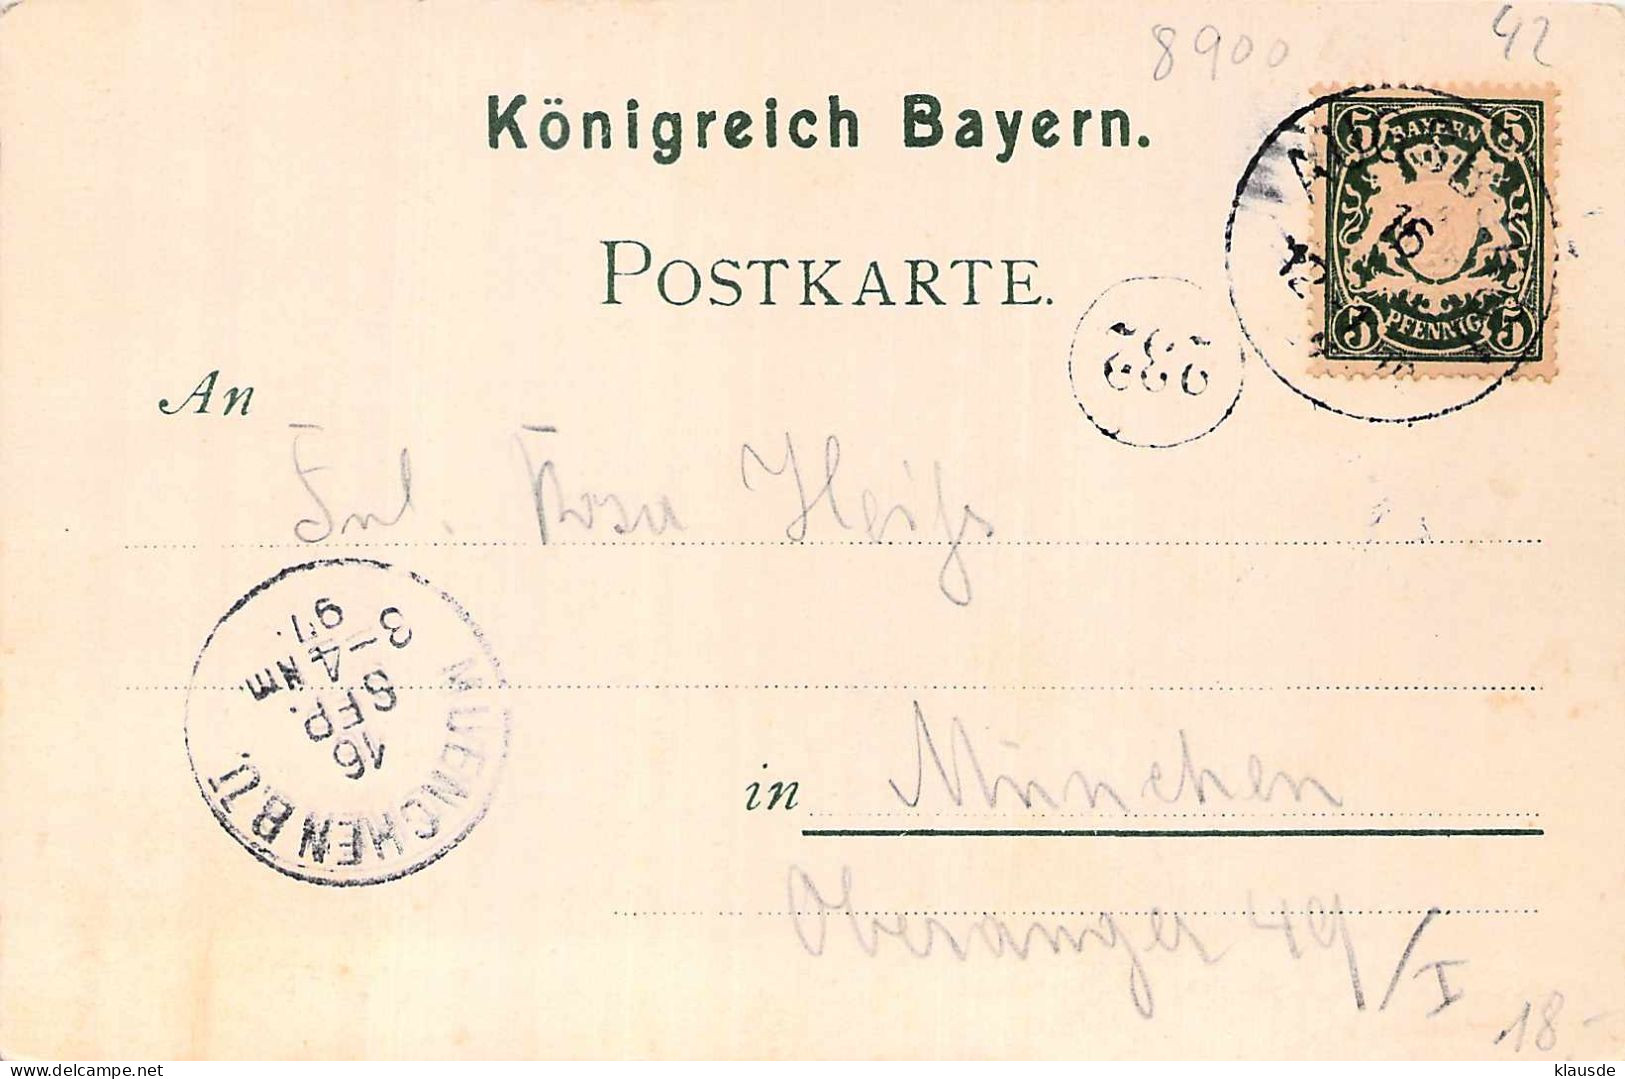 Gruss Aus Augsburg Jacobsplatz Gel.1897 AKS - Augsburg